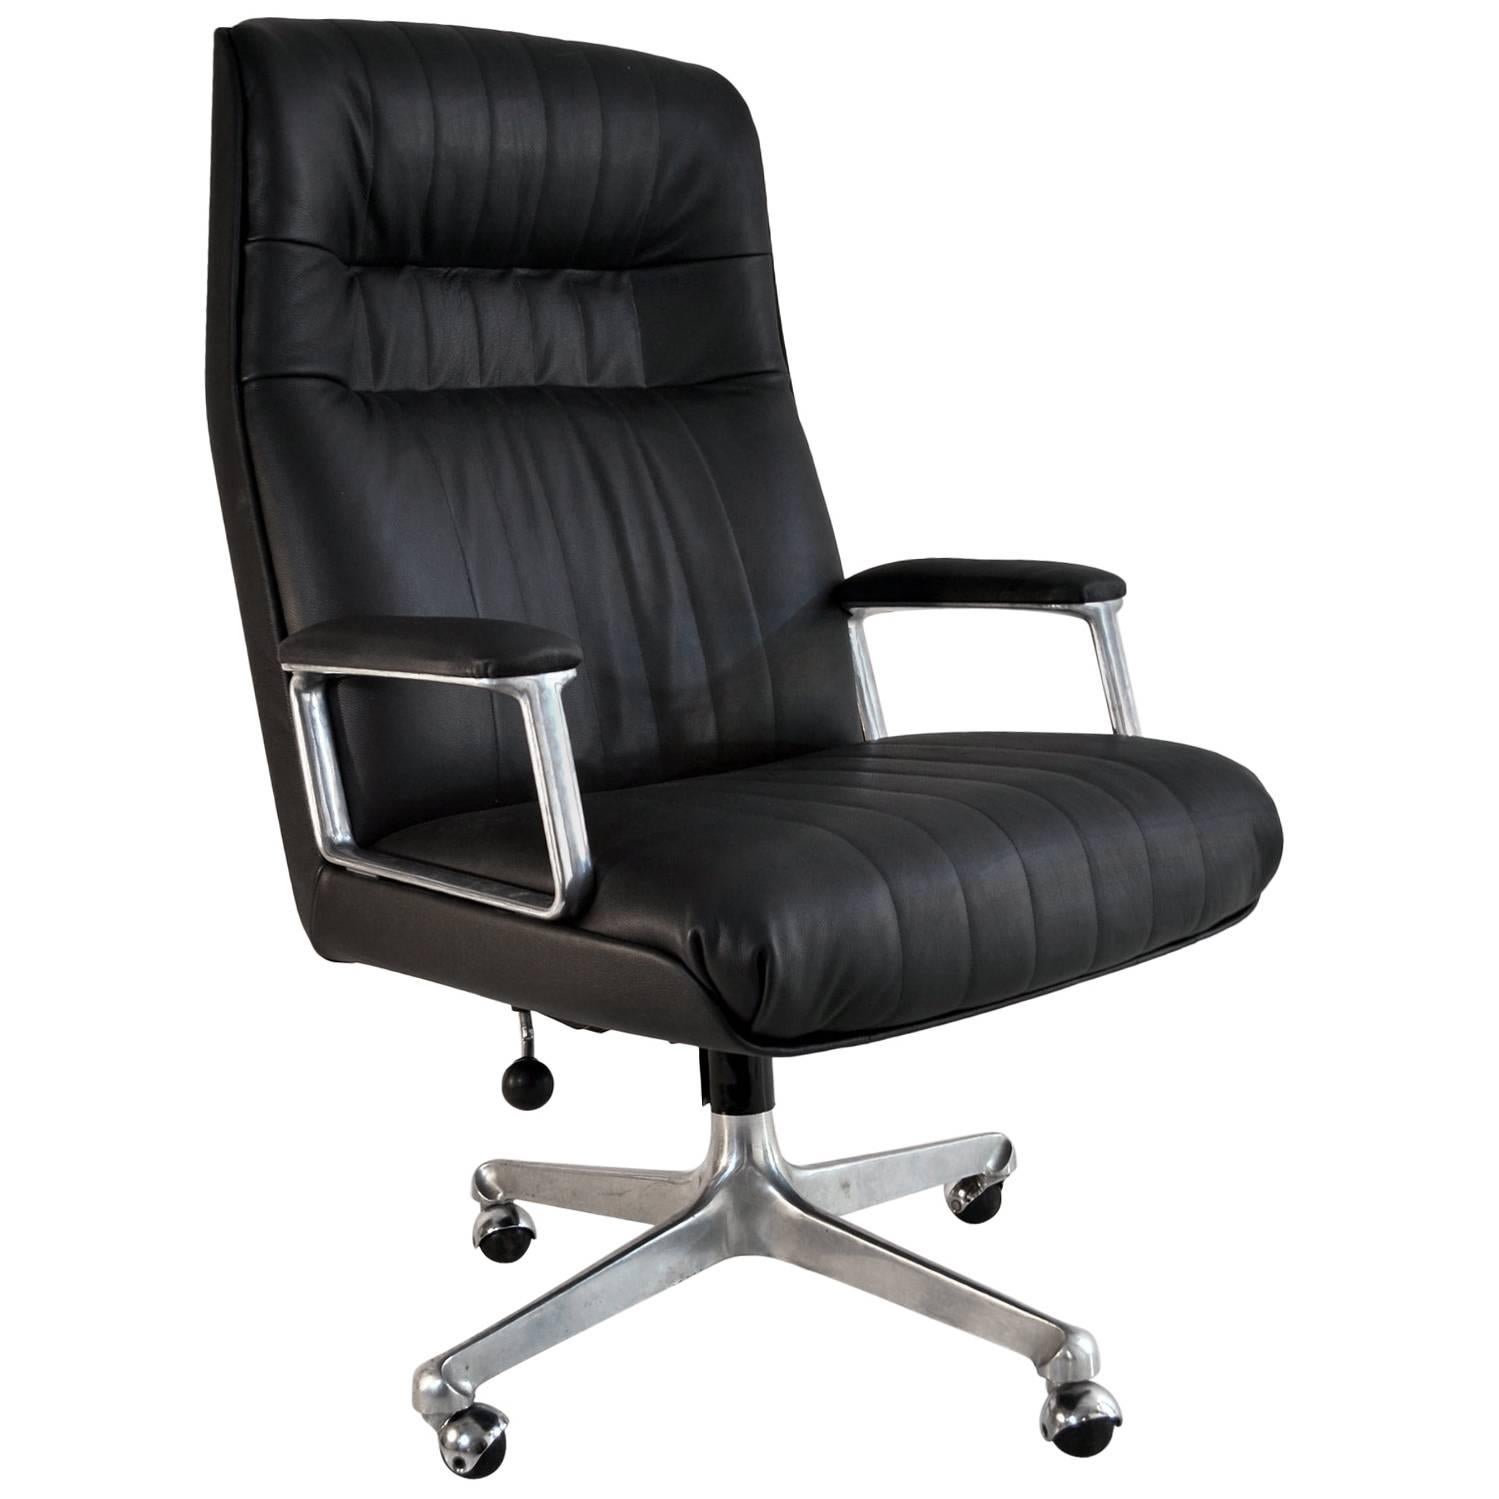 Executive Desk Chair P128 by Osvaldo Borsani for Tecno